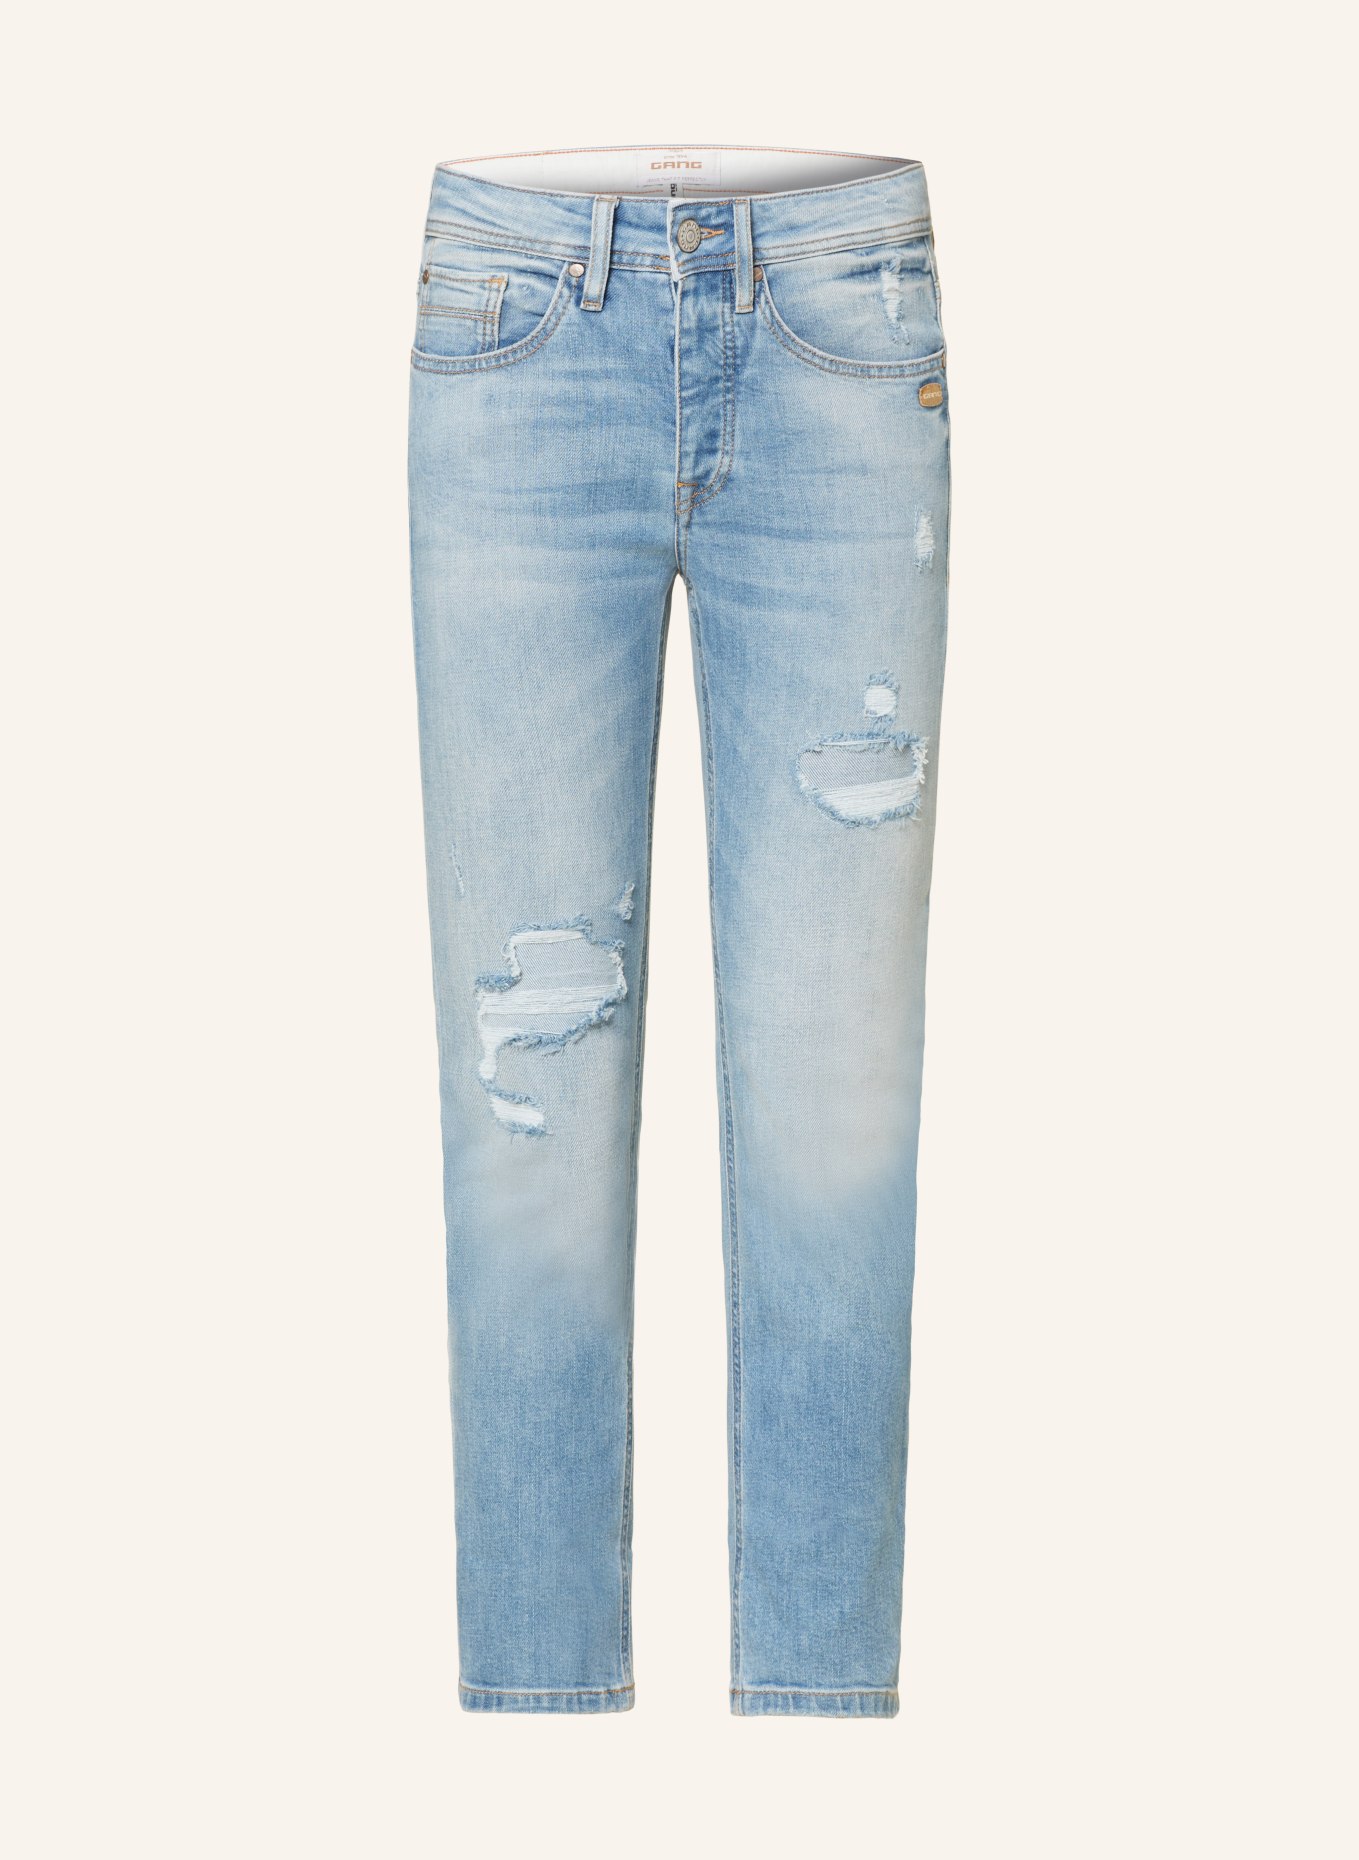 GANG 7/8-Jeans NICA, Farbe: 7324 light blue destoyed (Bild 1)